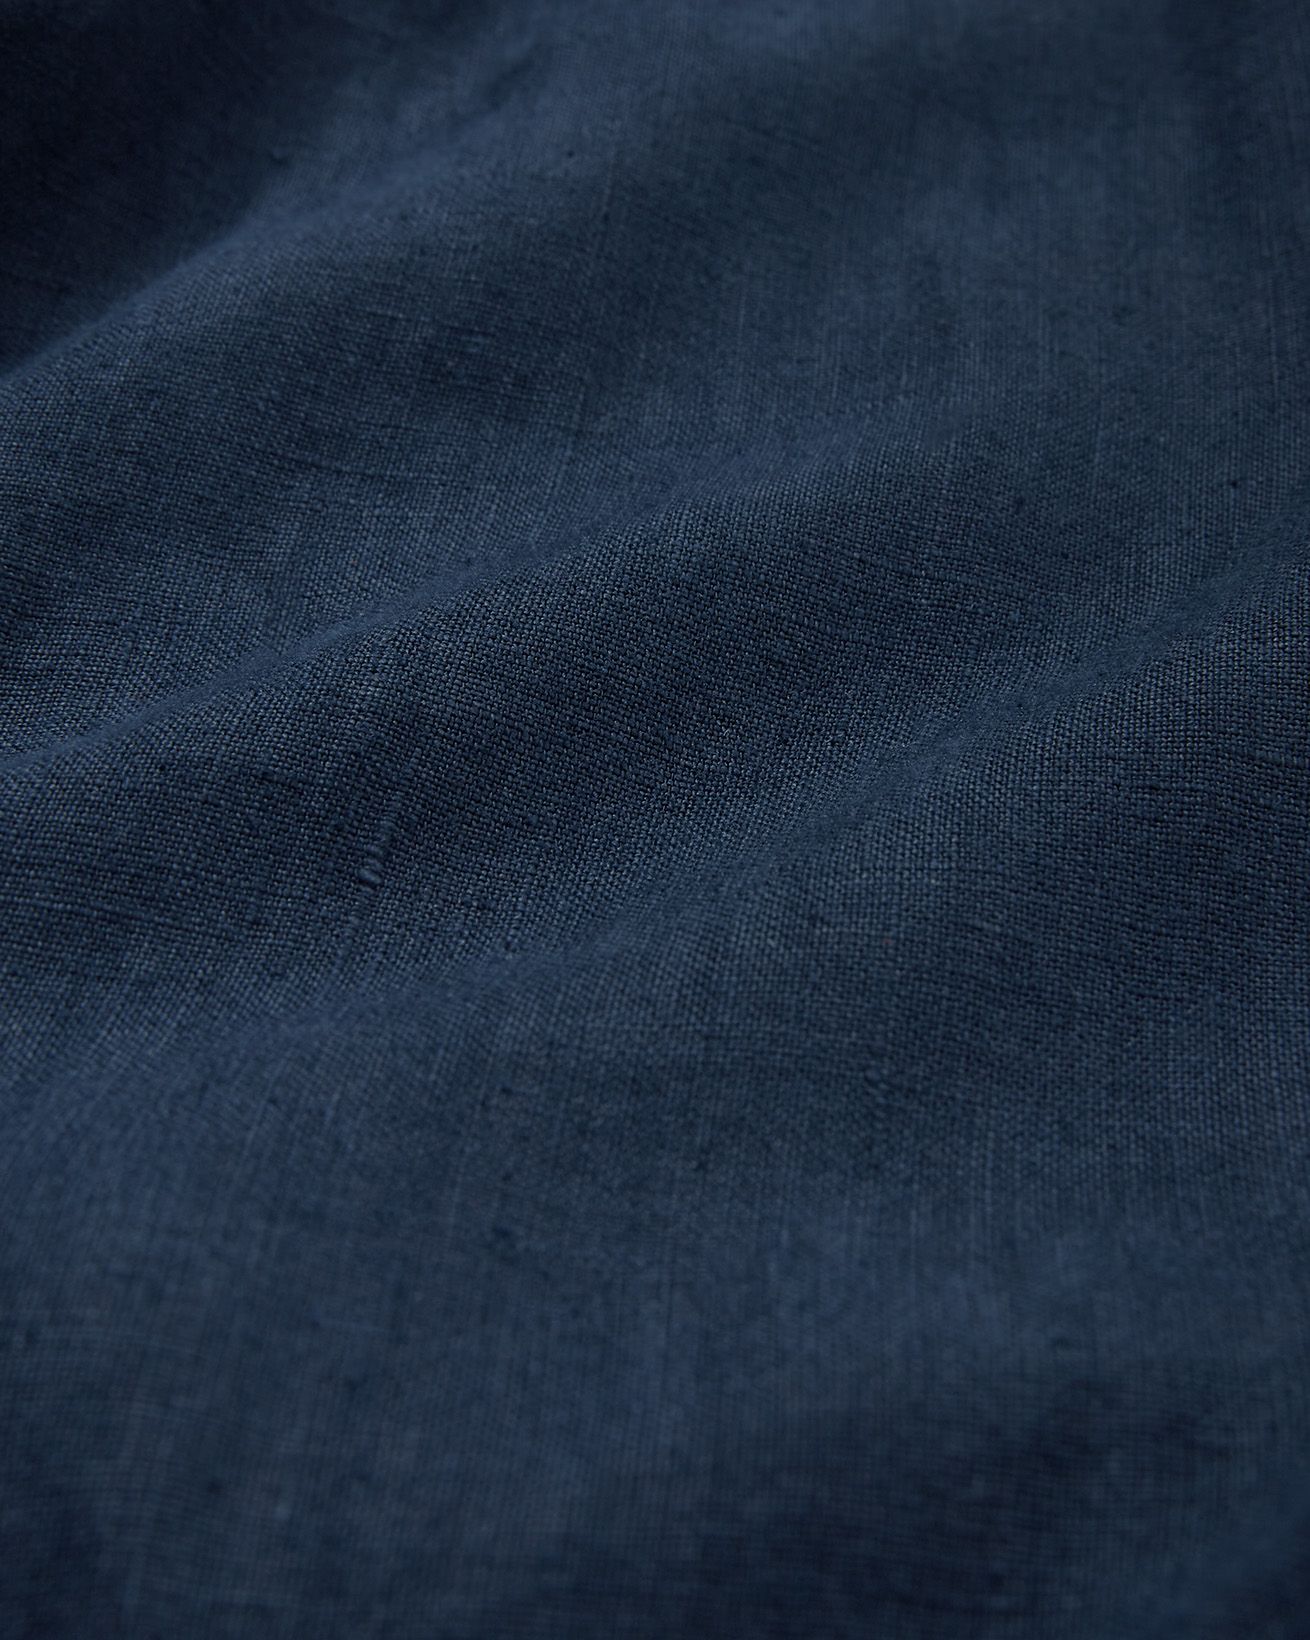 8441_linen-button-through-midi-shirt-dress_dark-navy_detail-1_web.jpg